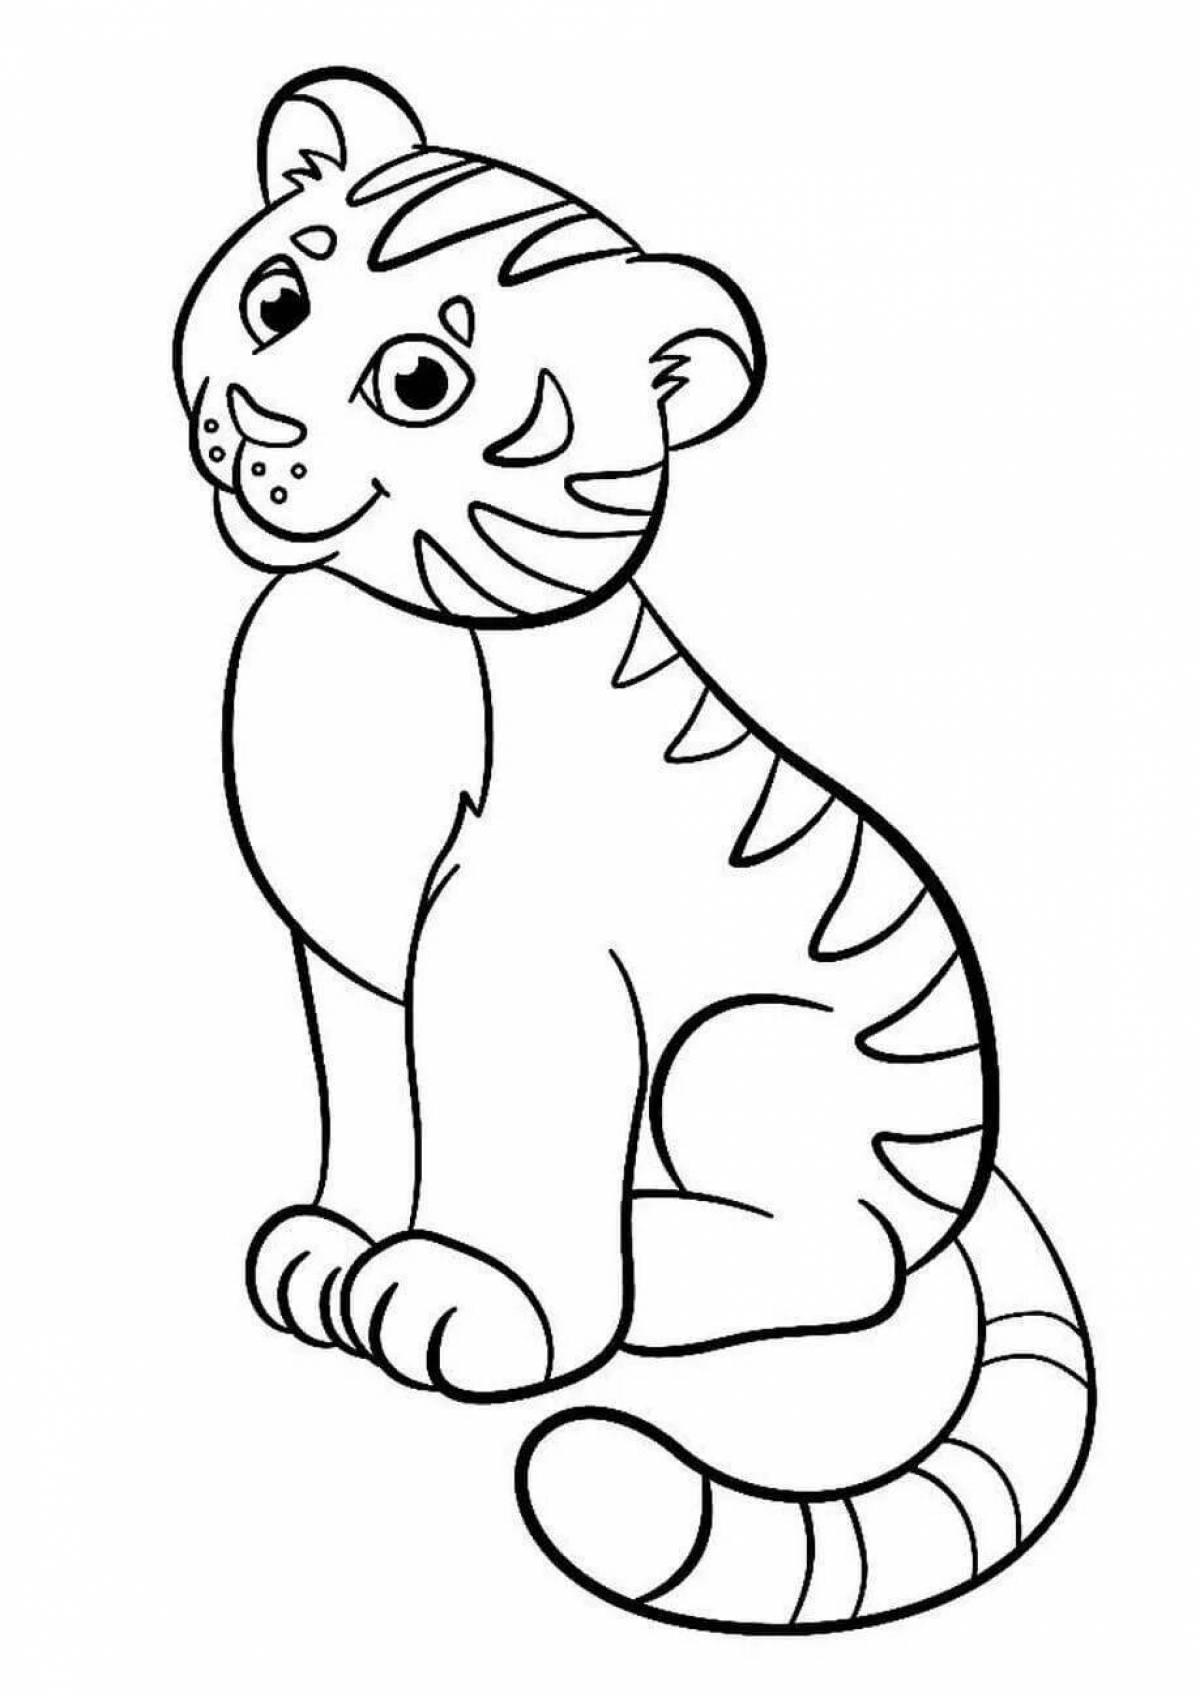 Раскраска Тигрёнок для детей 3-4 лет